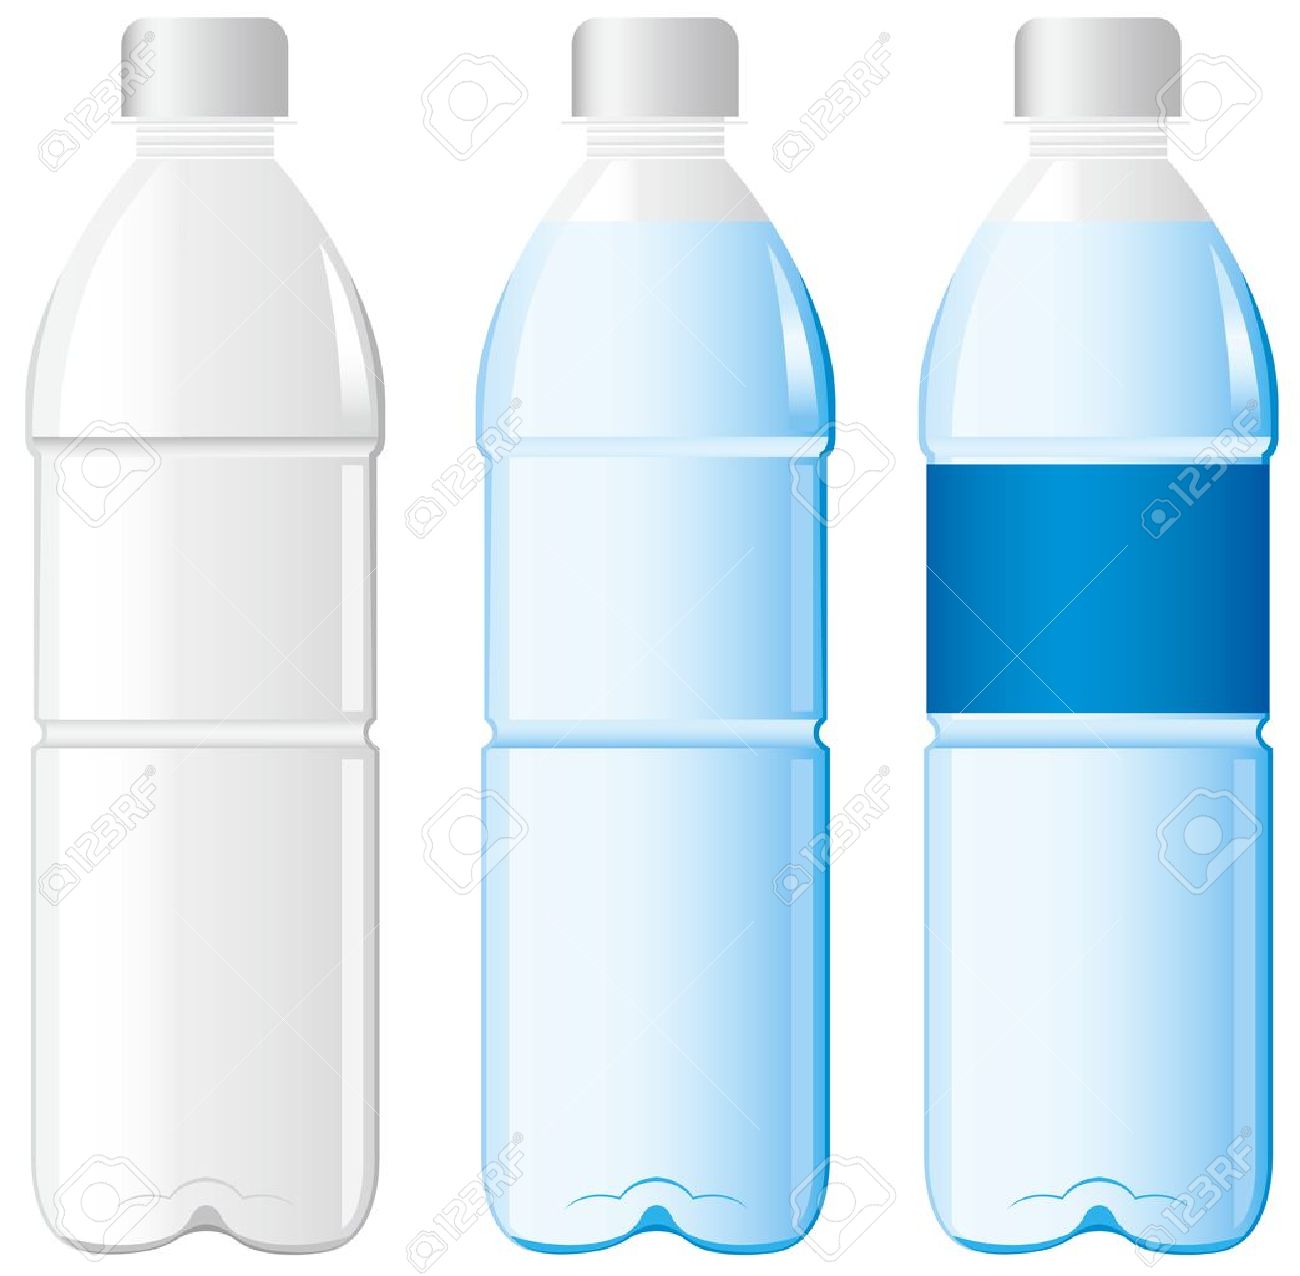 plastic bottle: bottle of water Vector Illustration